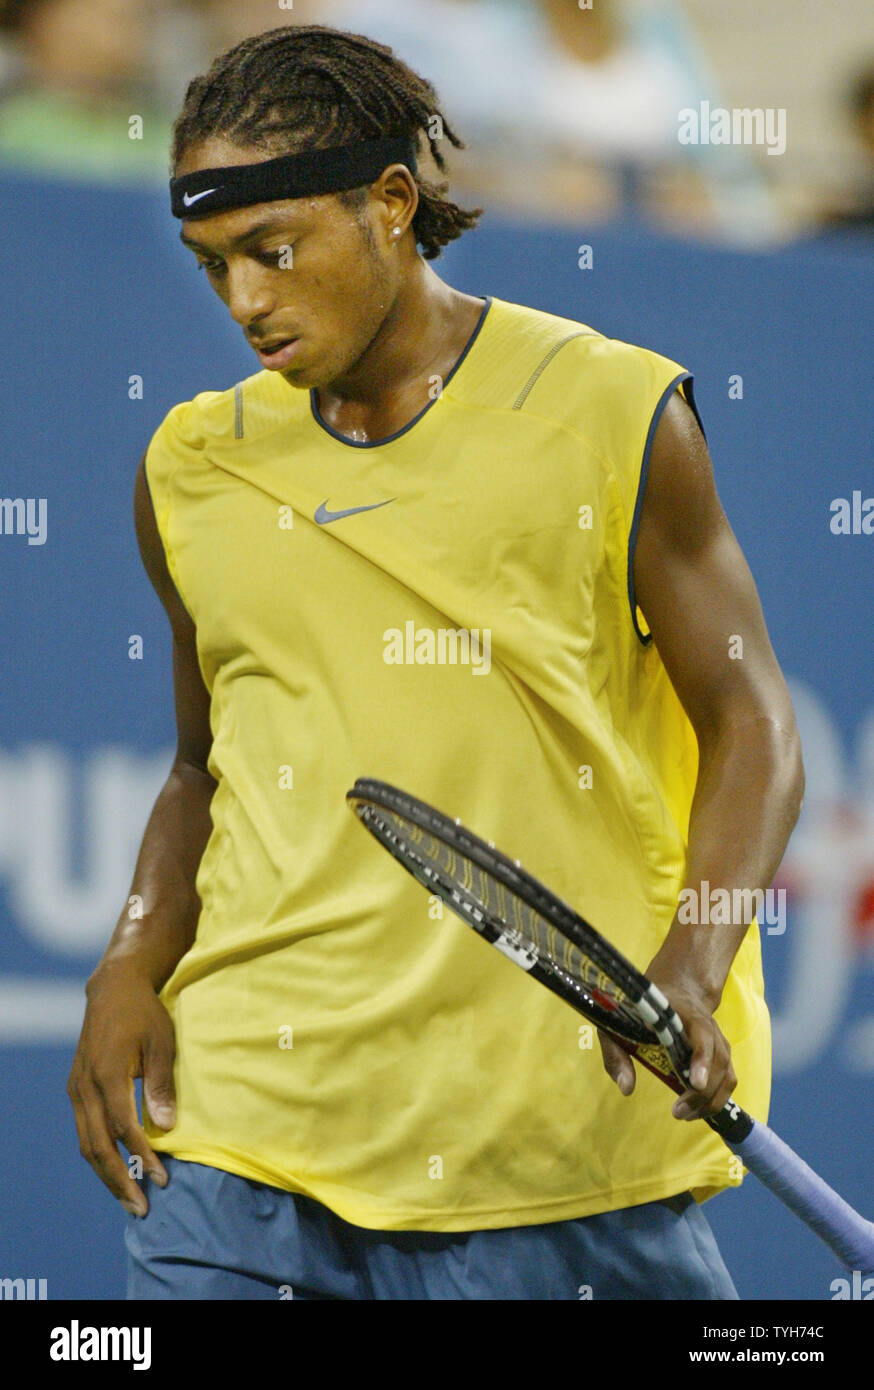 Scoville Jenkins (USA) réagit comme il perd un match de l'Espagne de Rafael Nadal, qui est classé deuxième, au cours de la première série de leur match à l'US Open le 31 août 2005 à New York. (Photo d'UPI/Monika Graff) Banque D'Images